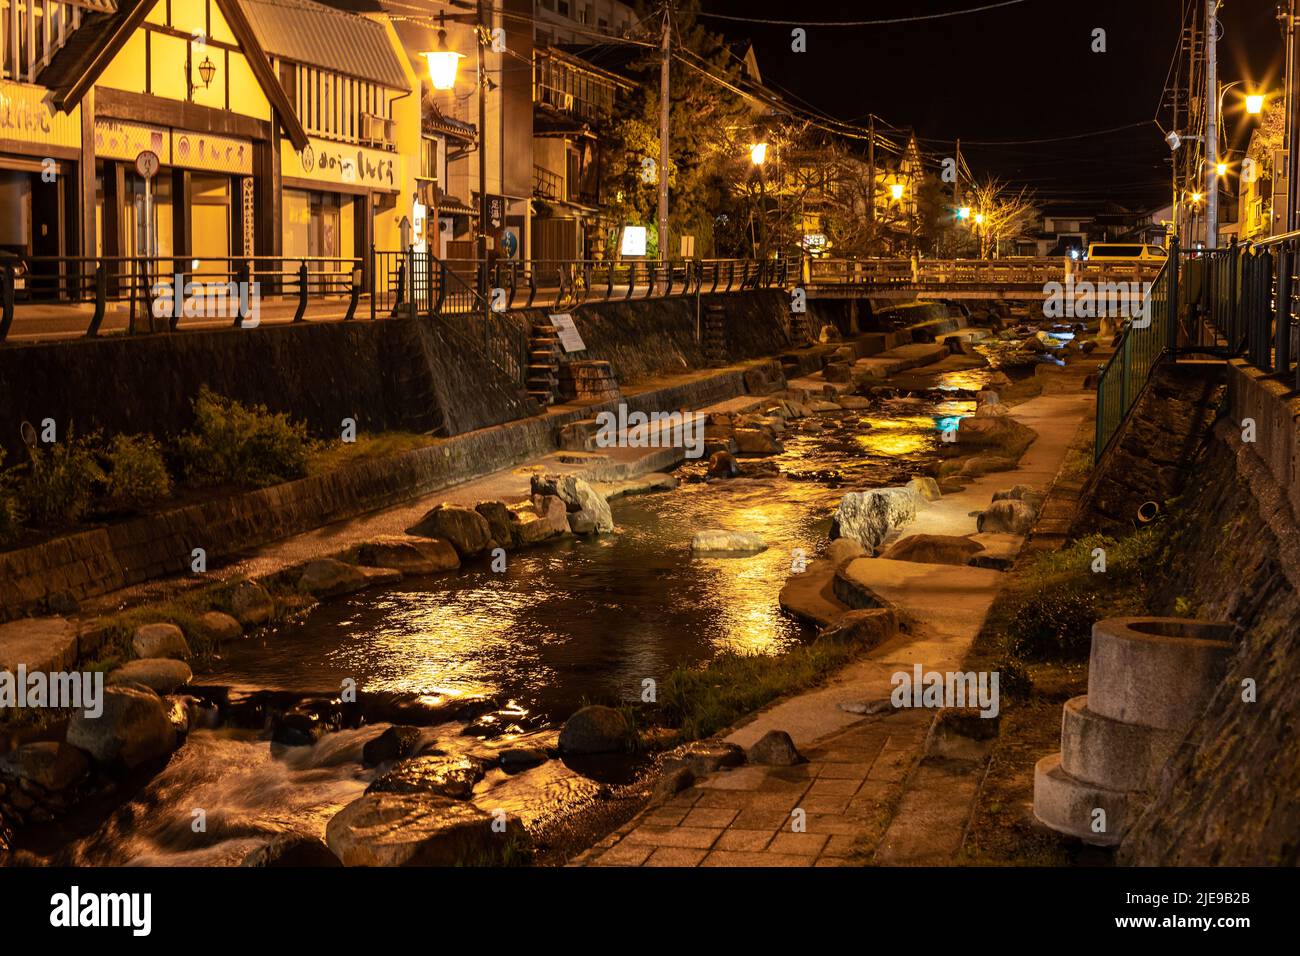 Illuminato Tamatsukuri Onsen paesaggio urbano e Tamayugawa fiume di notte. La città di Tamatsukuri è conosciuta come storica stazione termale di Matsue. Foto Stock